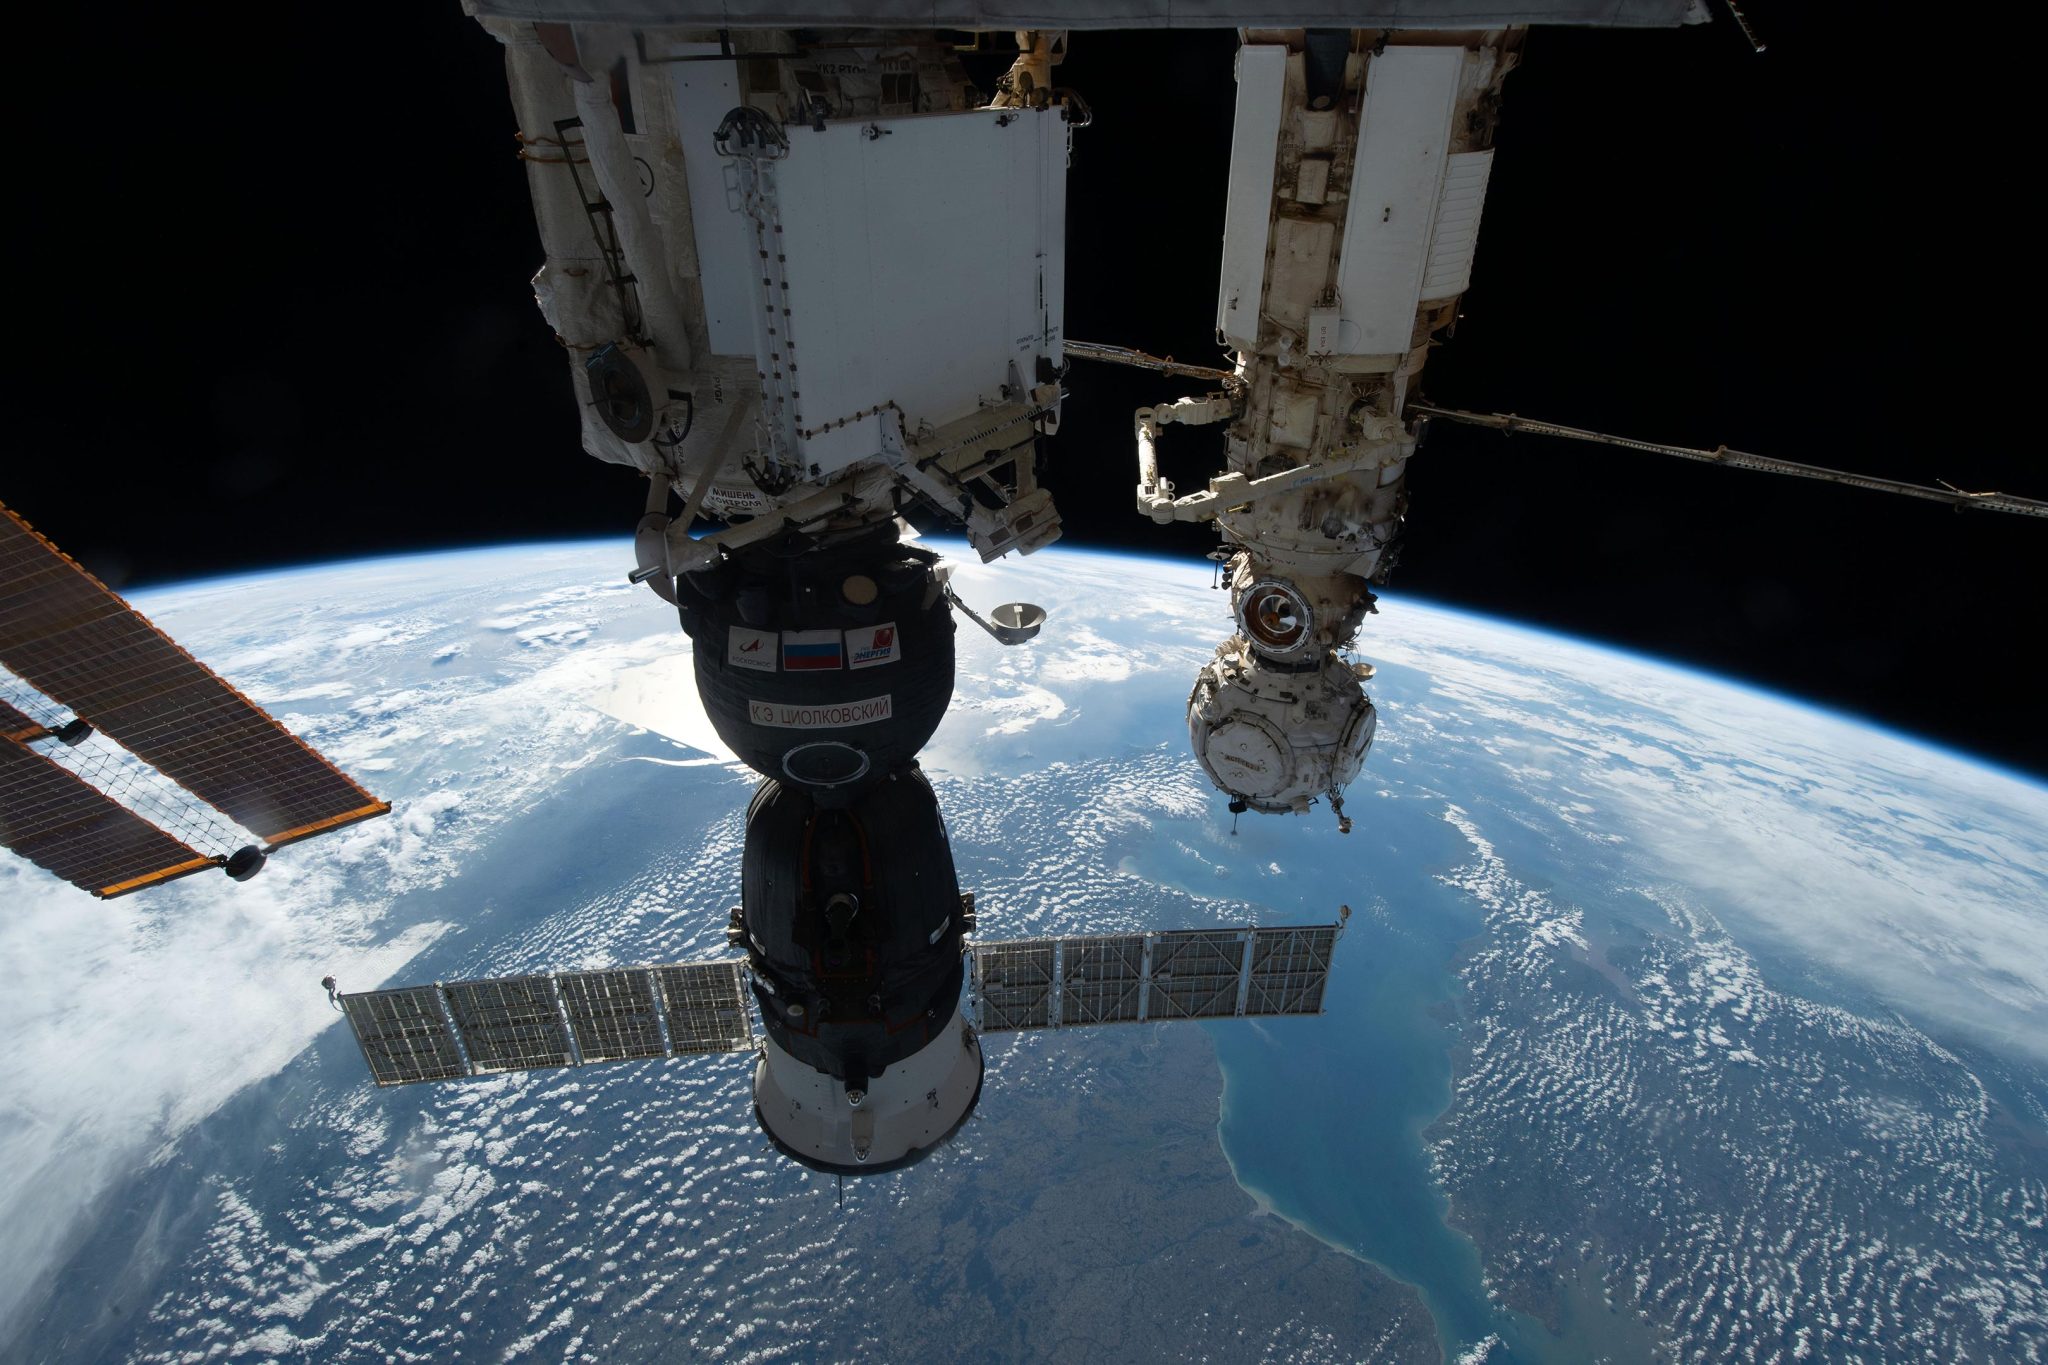 Δοκιμή ώθησης σε διαρροή διαστημικού σκάφους Σογιούζ – Ο διαστημικός περίπατος στις ΗΠΑ αναβλήθηκε